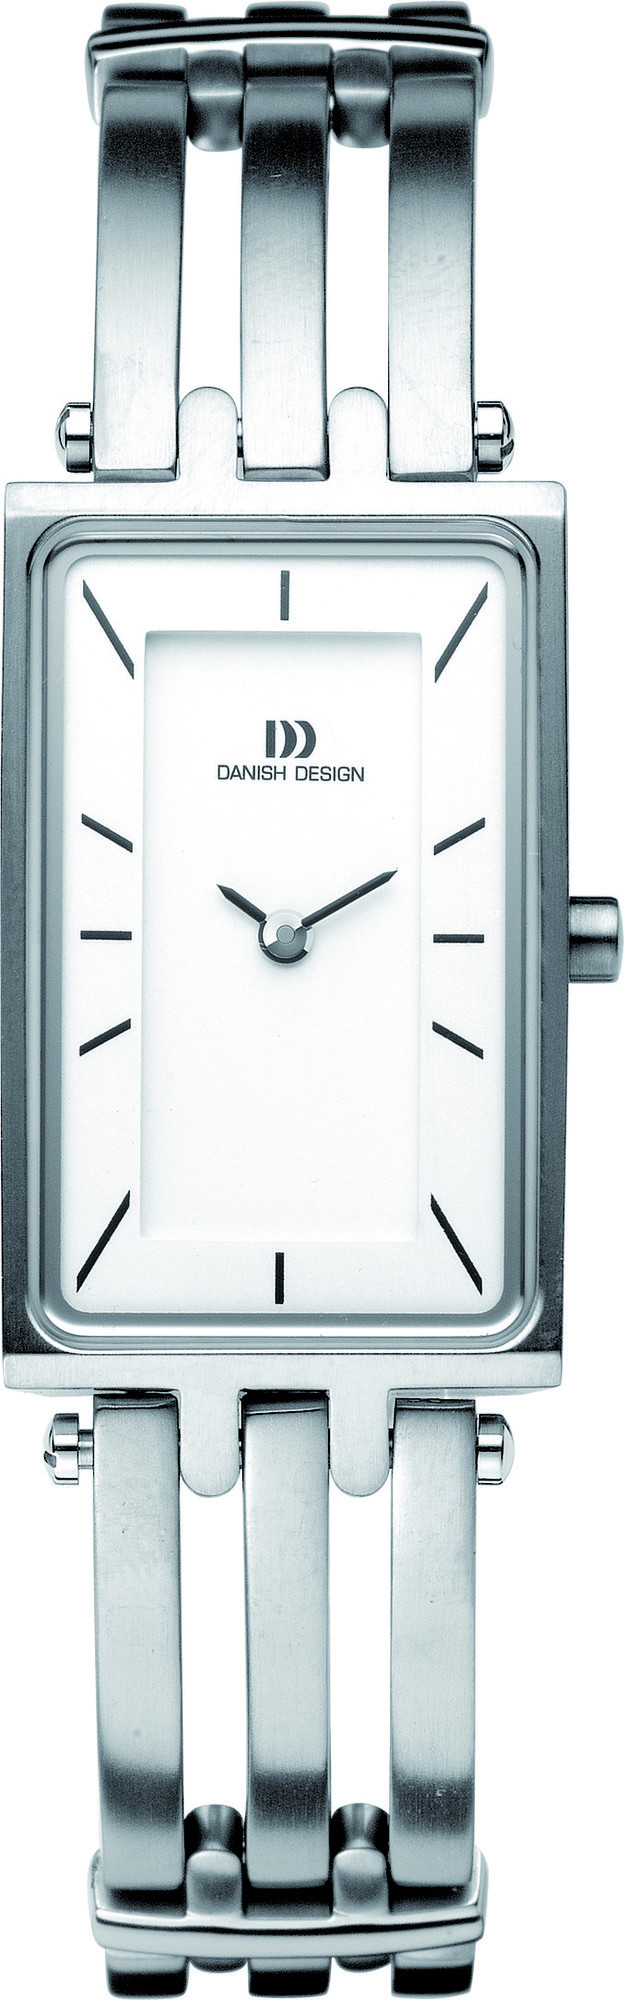 Danish Design Horloge 20/30 mm Titanium IV62Q663 1